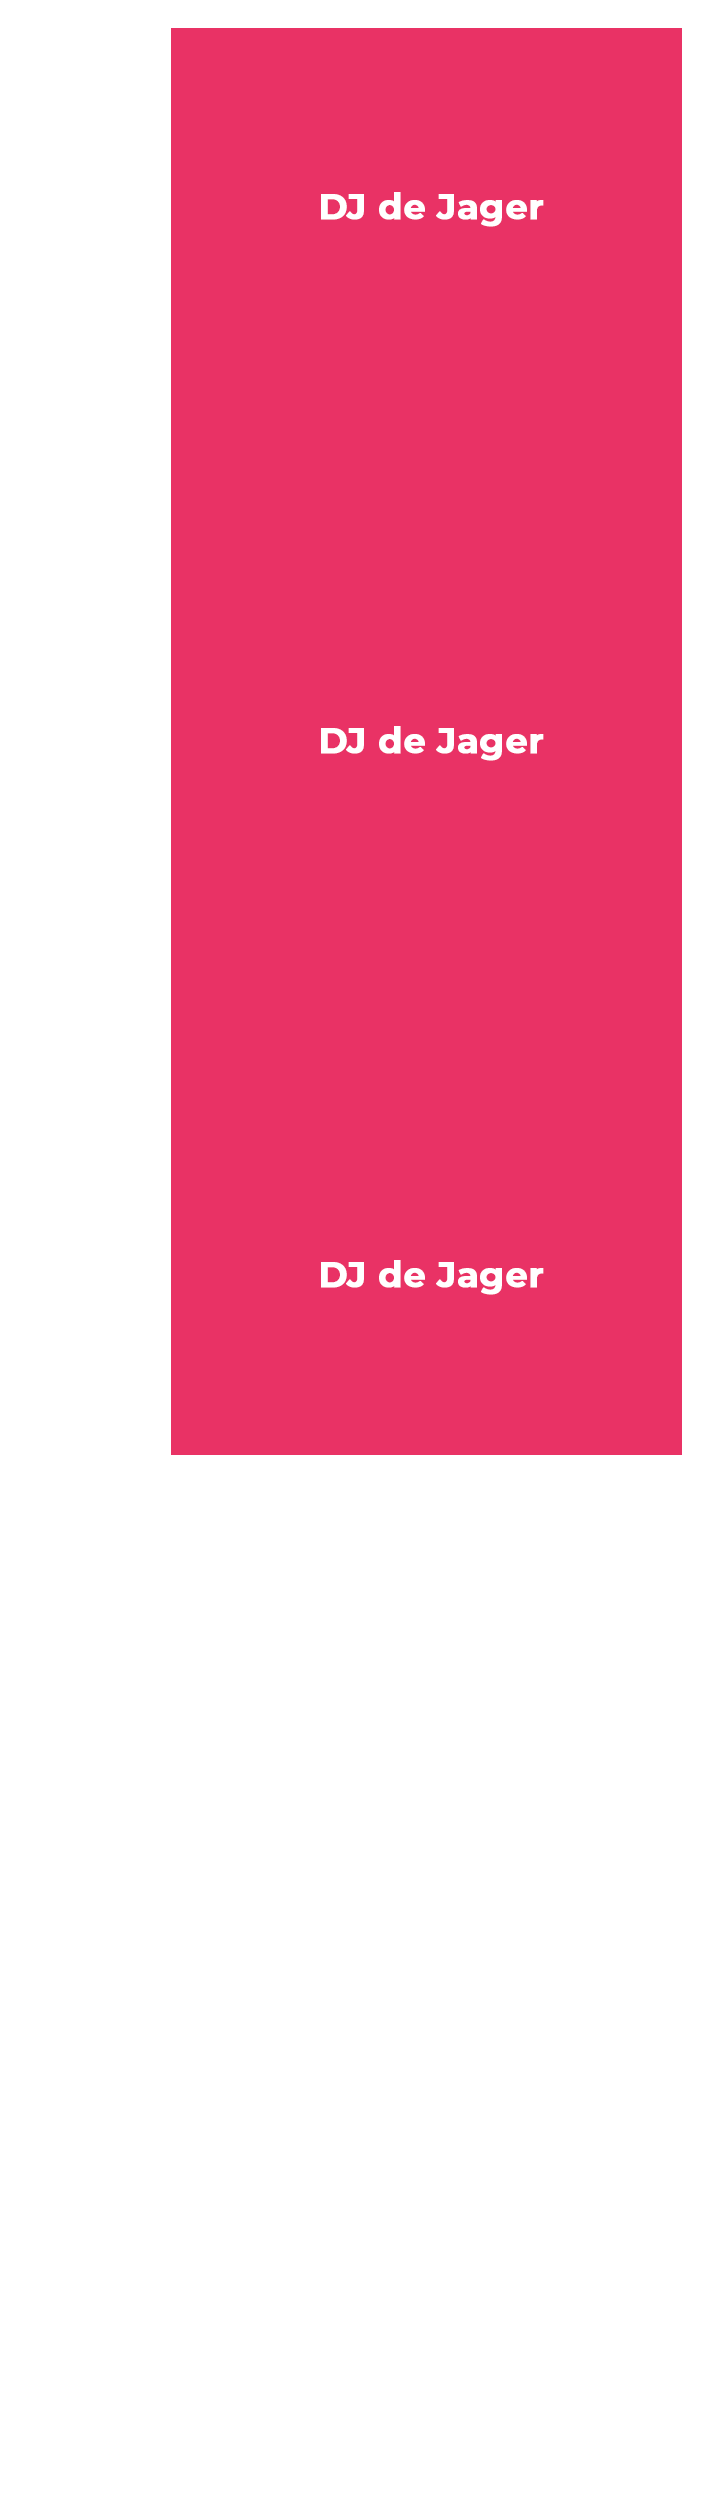 https://nijmeegsebierfeesten.nl/wp-content/uploads/2020/01/2020-muziekprogramma-zondag-bovenzaal-2.png